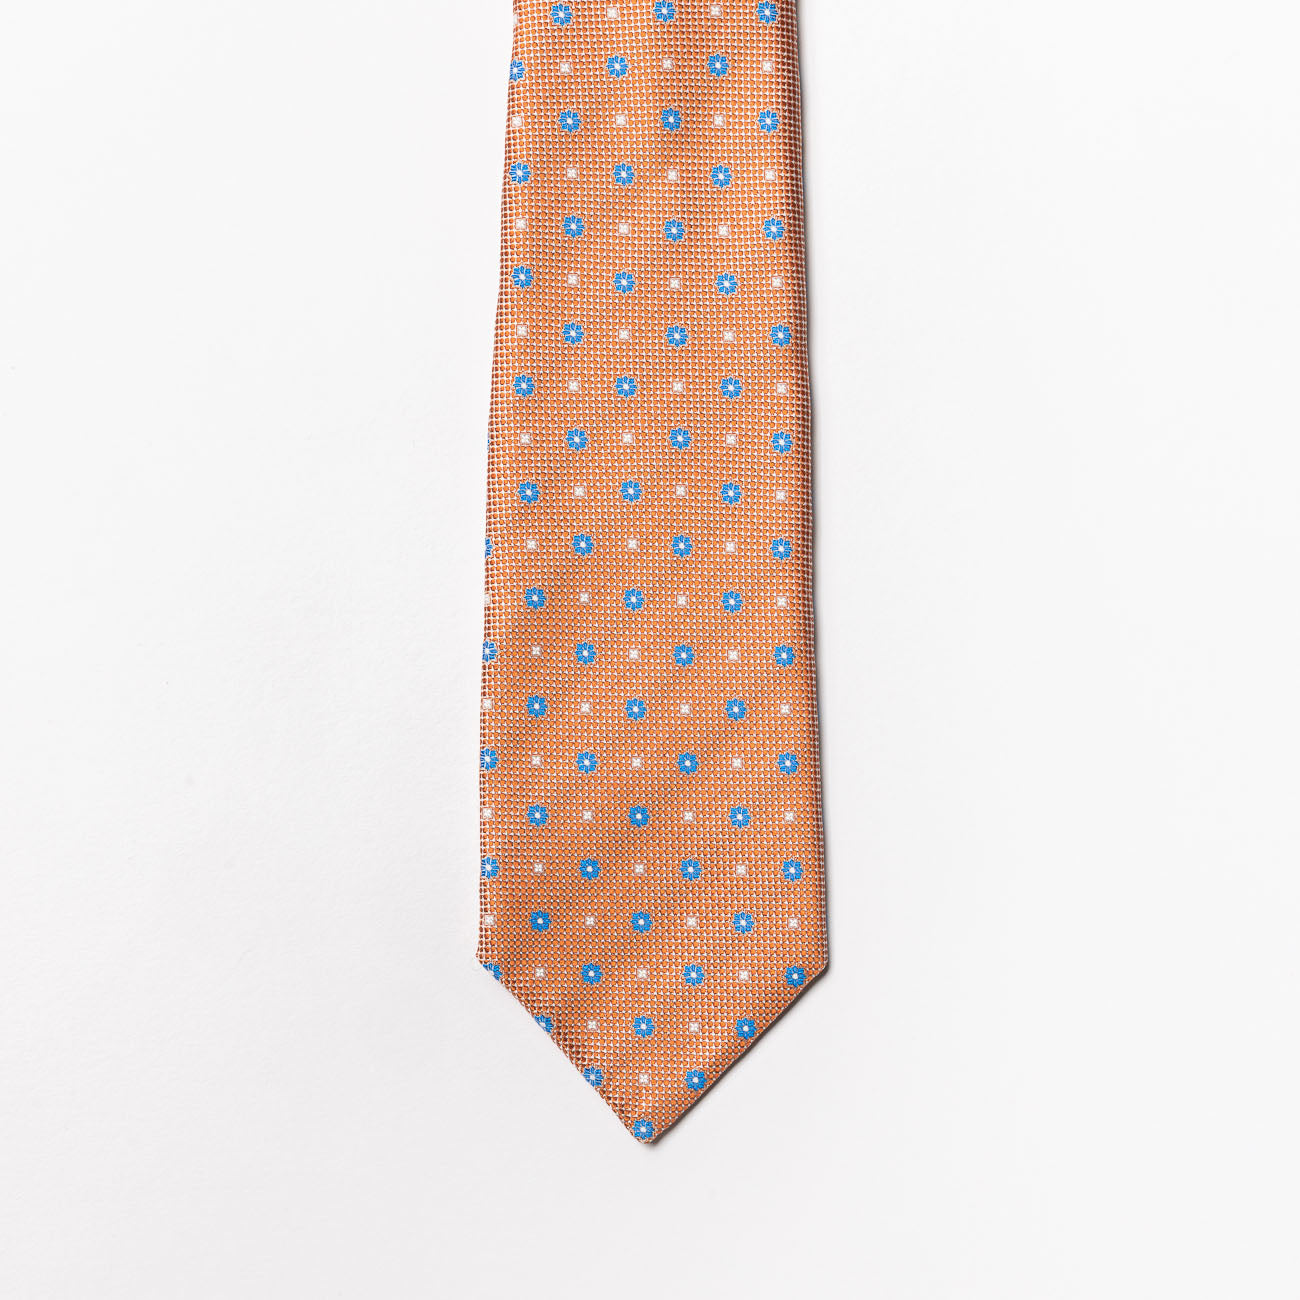 Cravatta 5 pieghe Tailor’s and Ties in seta arancione